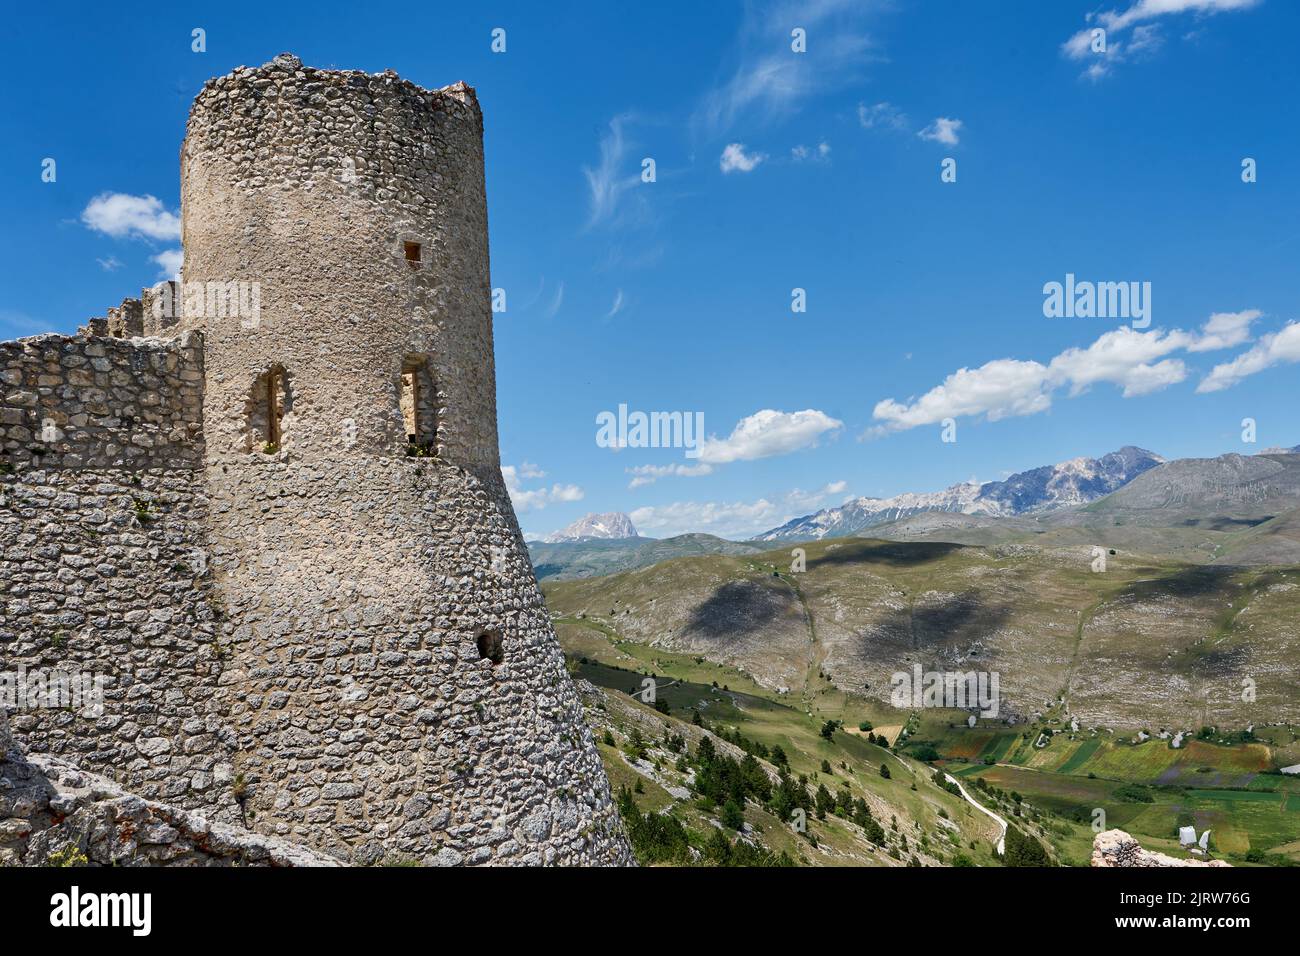 Burgruine Rocca Calascio, bei dem Bergdorf Calascio, Nationalpark Gran Sasso und Monti della Laga, Abruzzen, Provinz L’Aquila, Italien Stock Photo